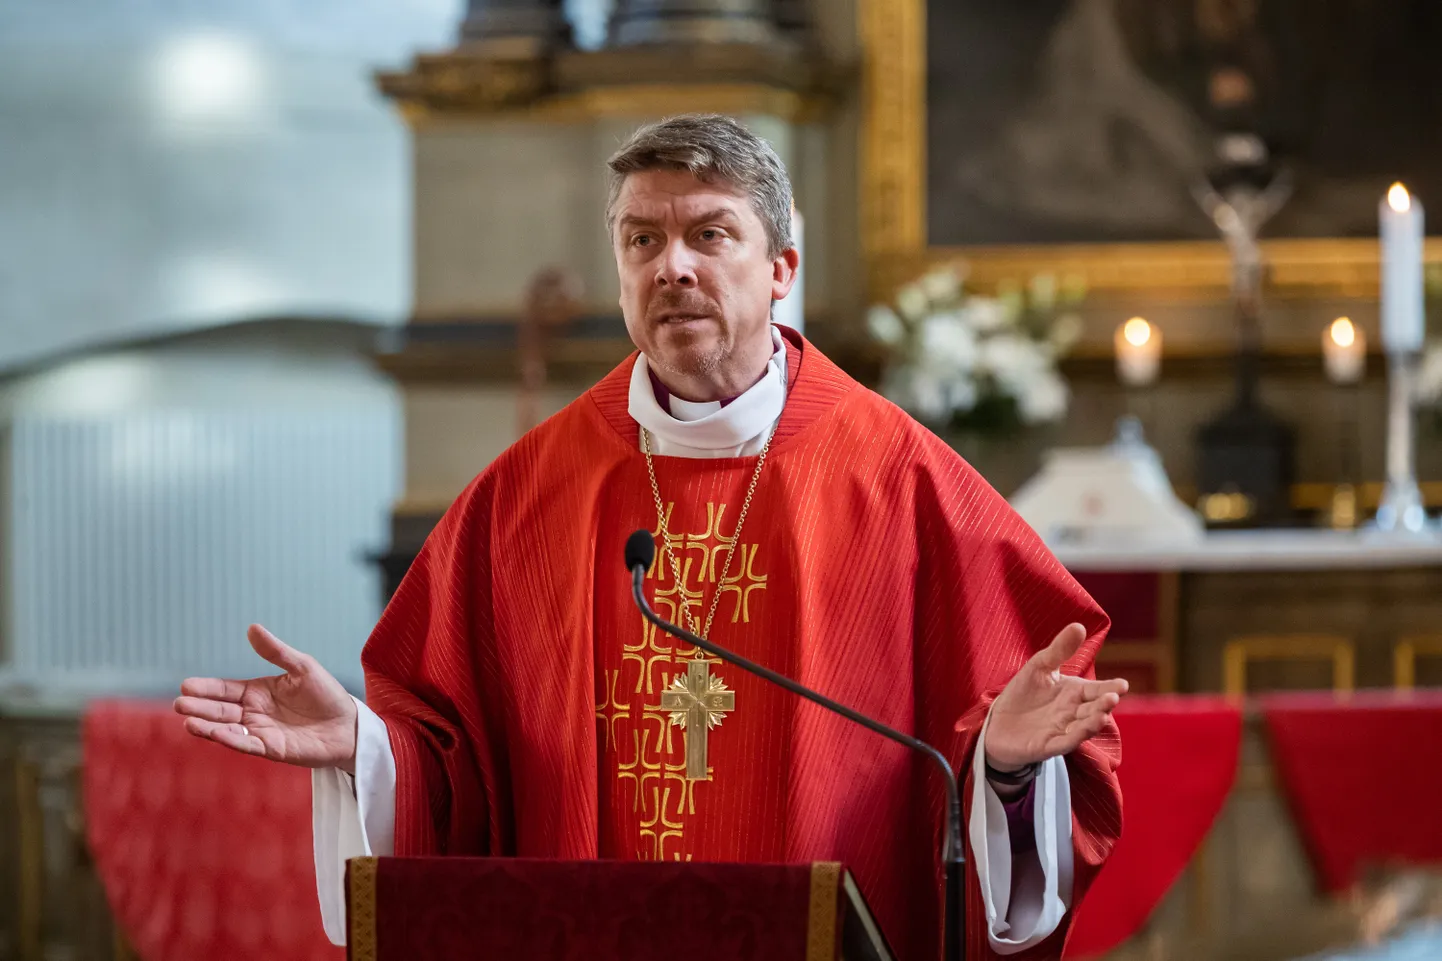 Usupuhastuspüha missal ordineeris peapiiskop Urmas Viilma Tallinna Piiskoplikus Toomkirikus EELK preestriks Katri Aaslav-Tepandi, Annely Neame ja Ariel Süvari.